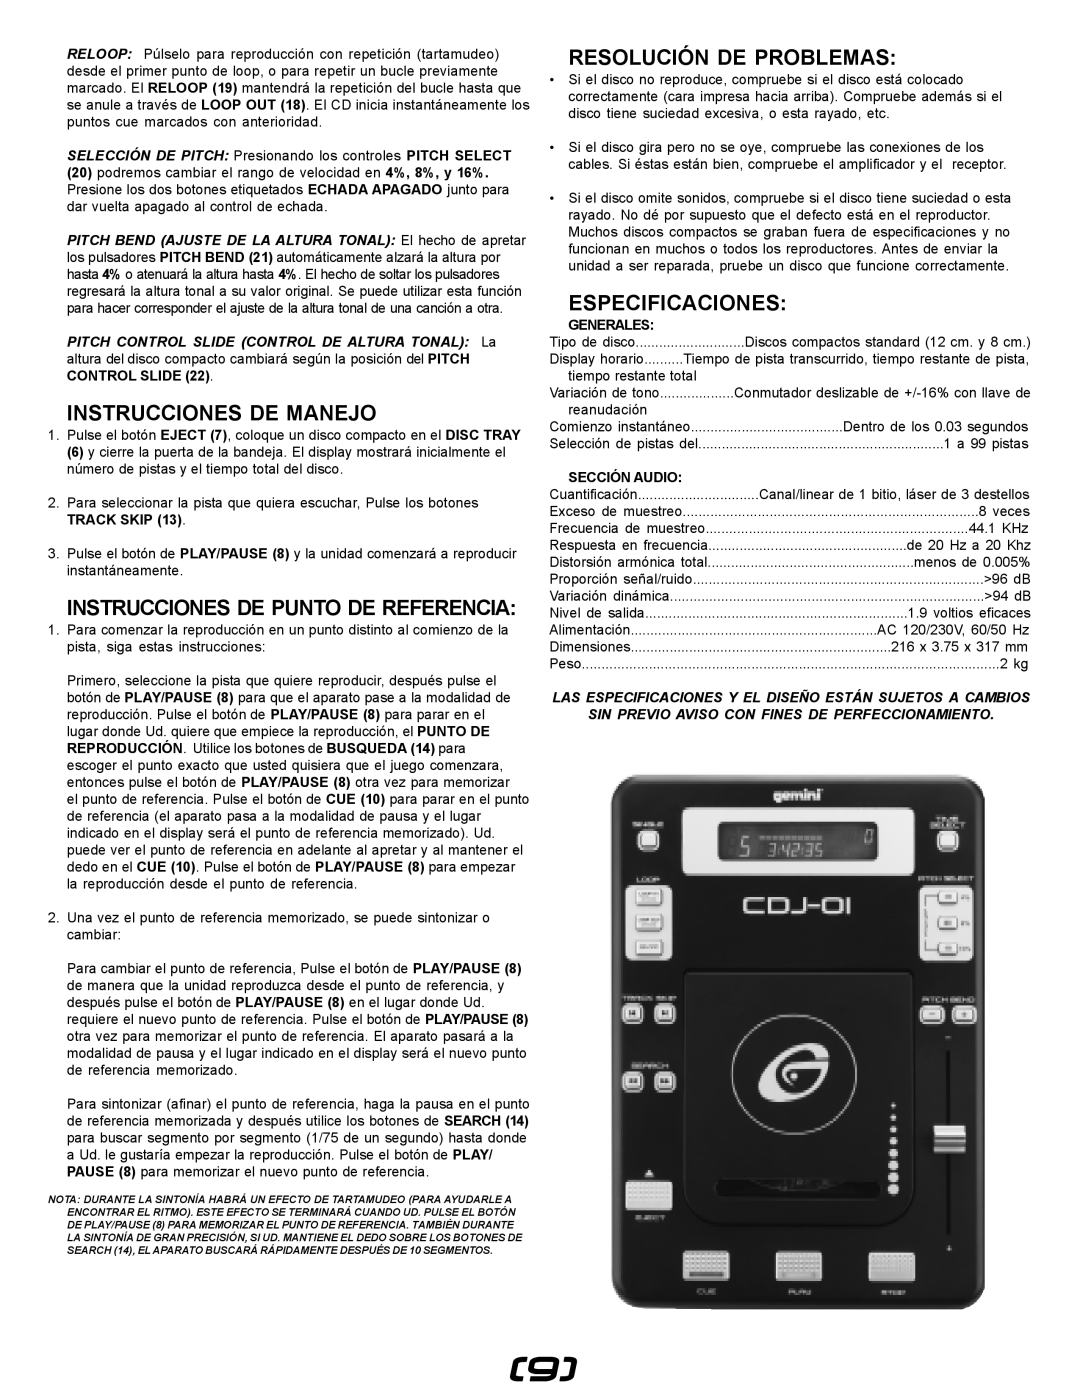 Gemini CDJ-01 Instrucciones De Manejo, Resolución De Problemas, Especificaciones, Instrucciones De Punto De Referencia 